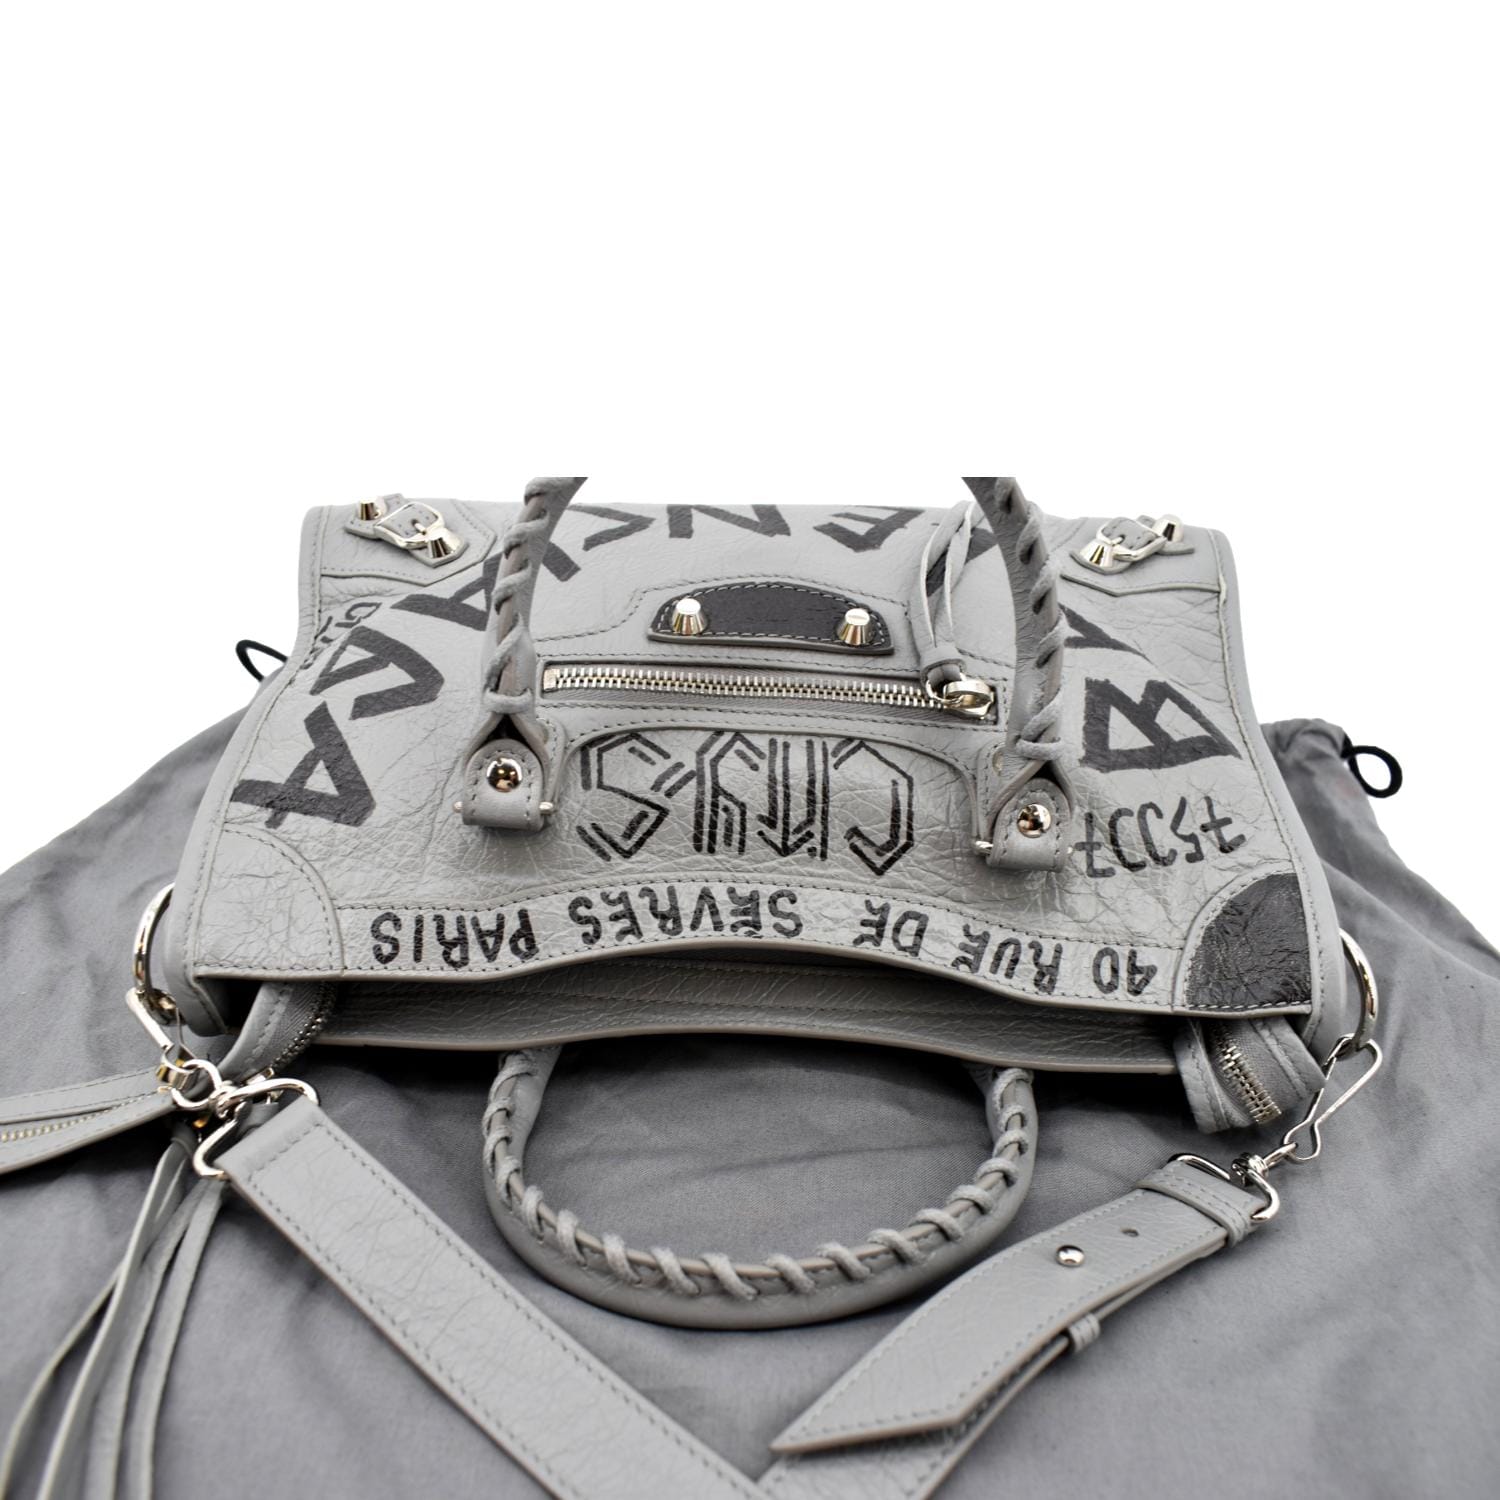 Balenciaga Light Grey City Bag with Crossbody Strap